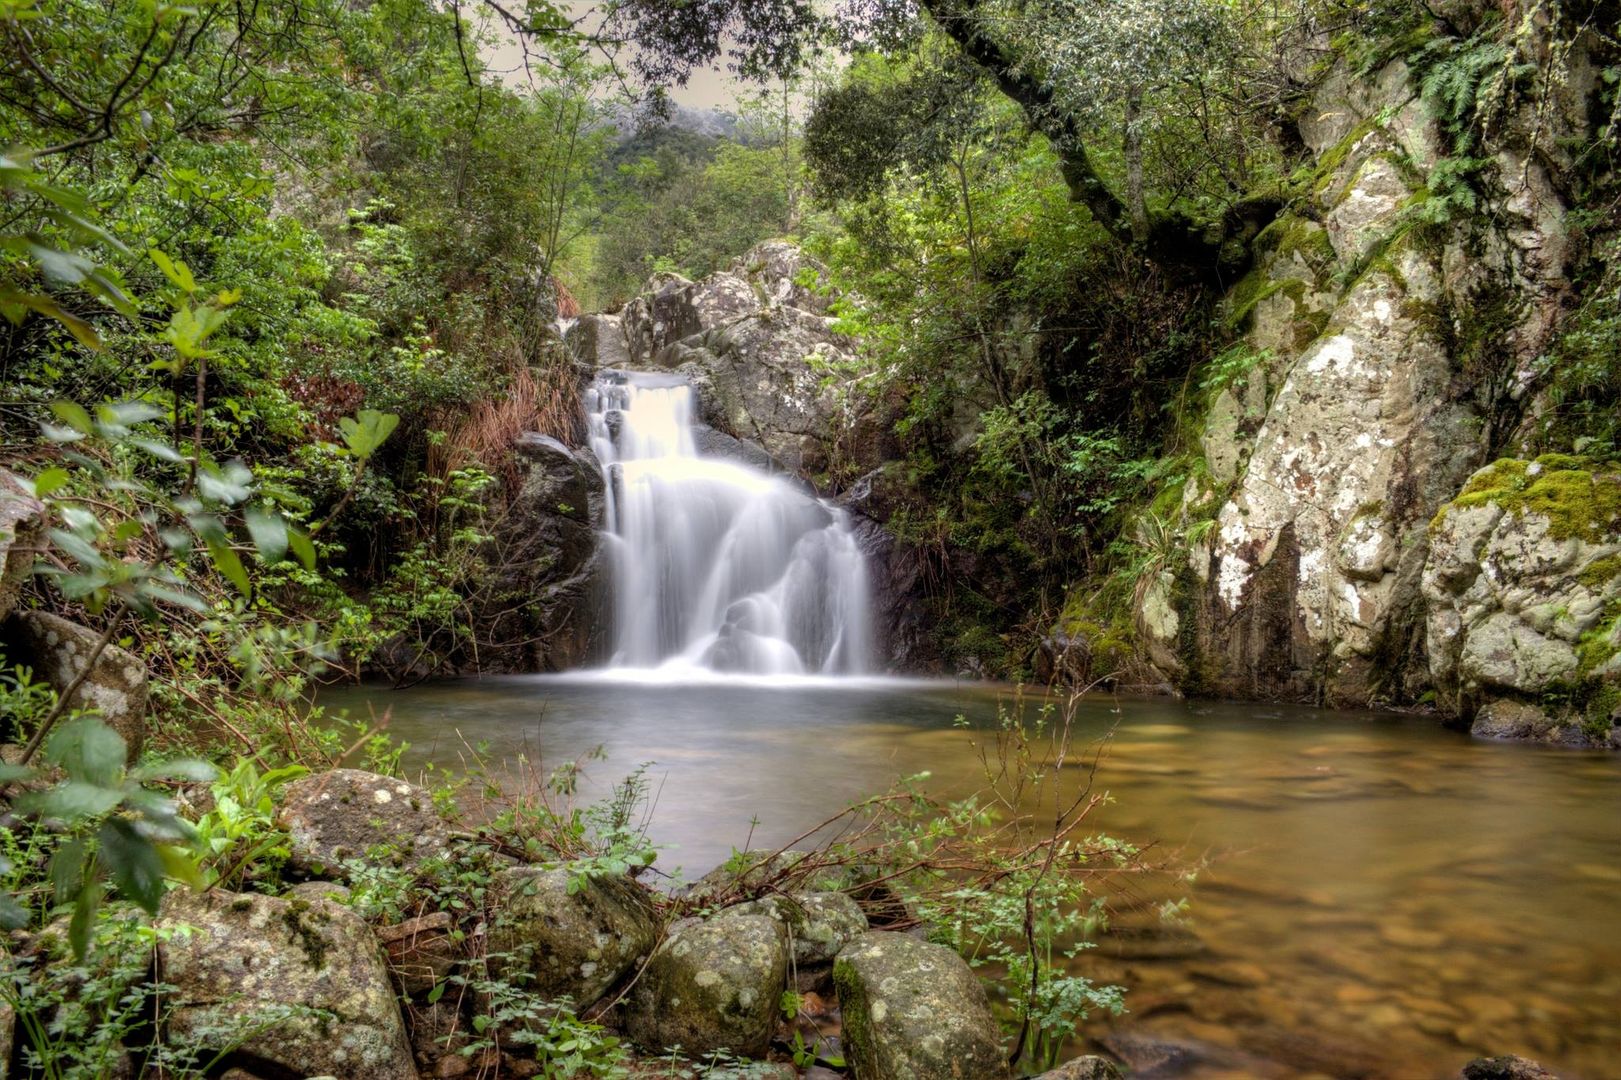 Antonio Concas - Limbara waterfall